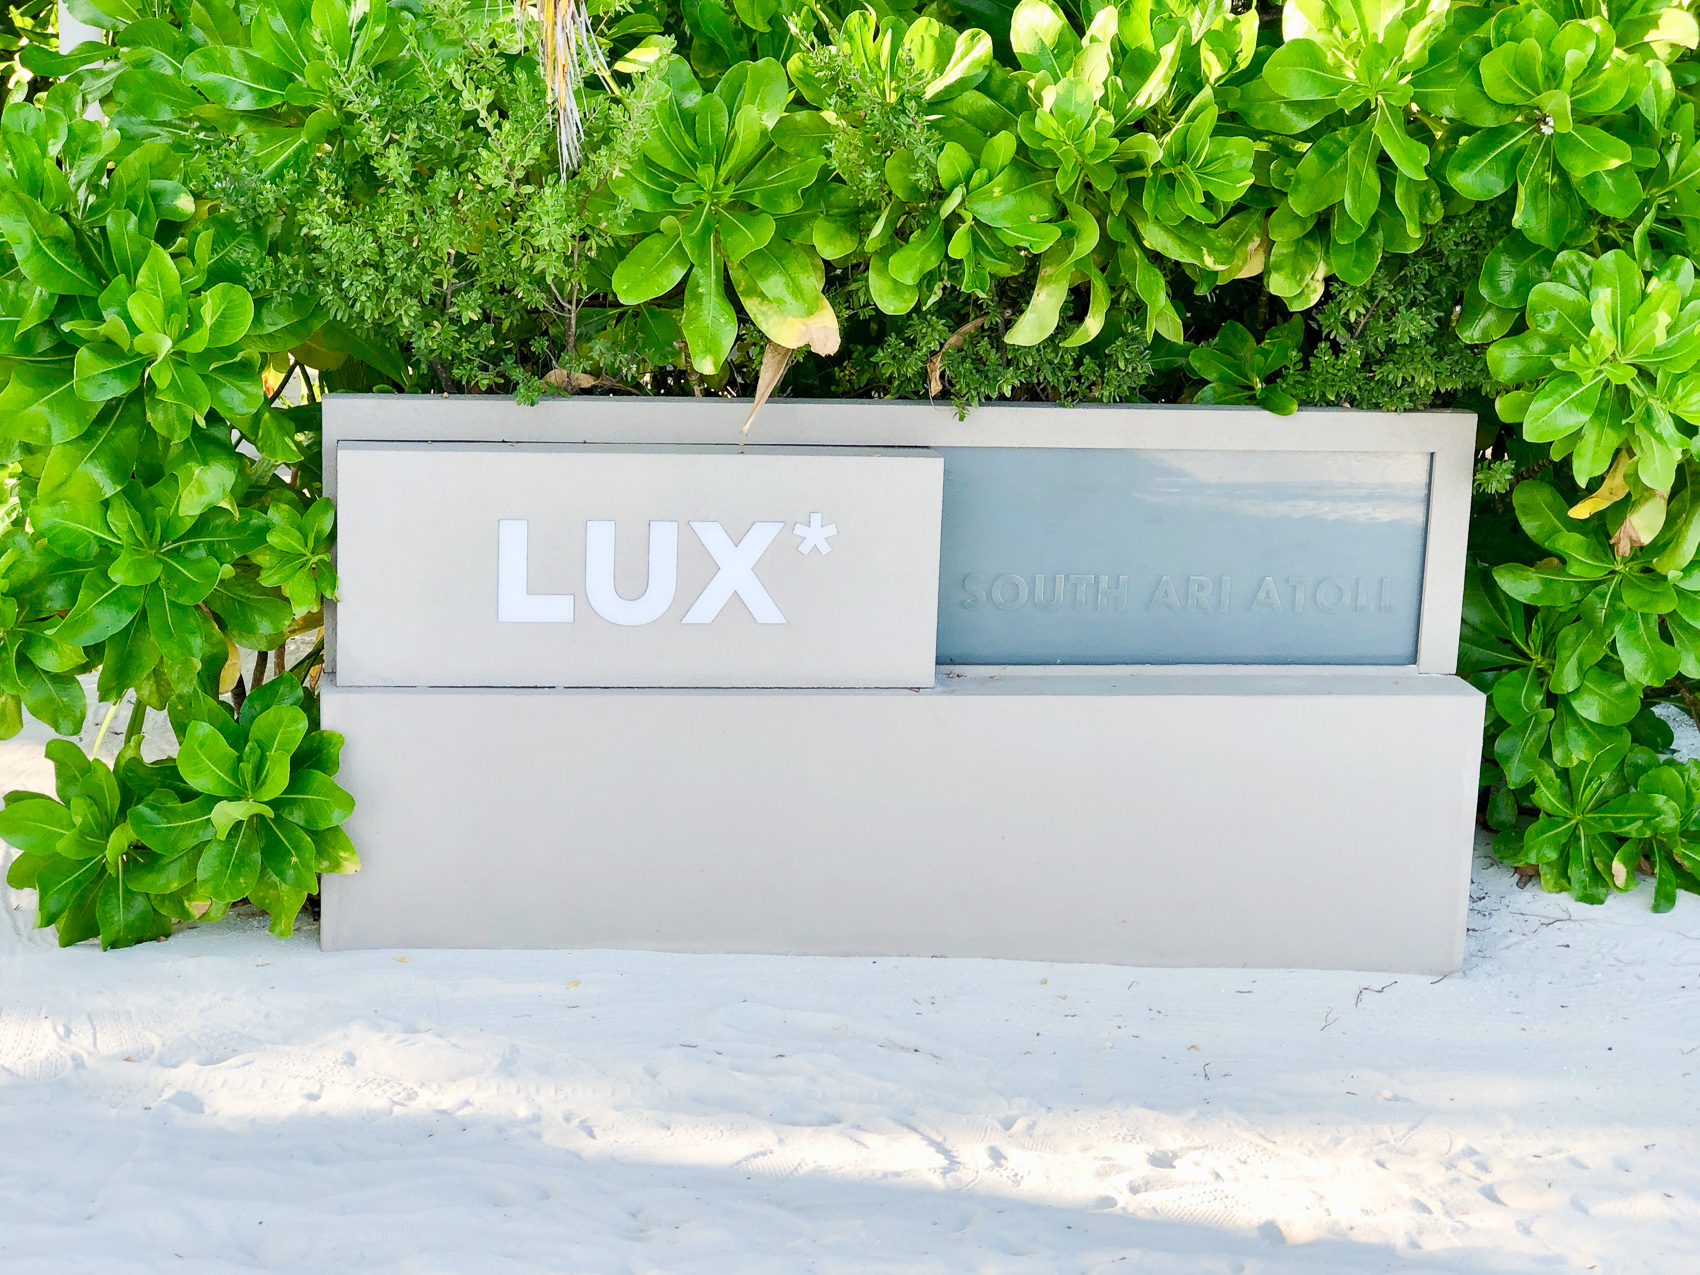 Lux Sout Ari Atoll Maldives